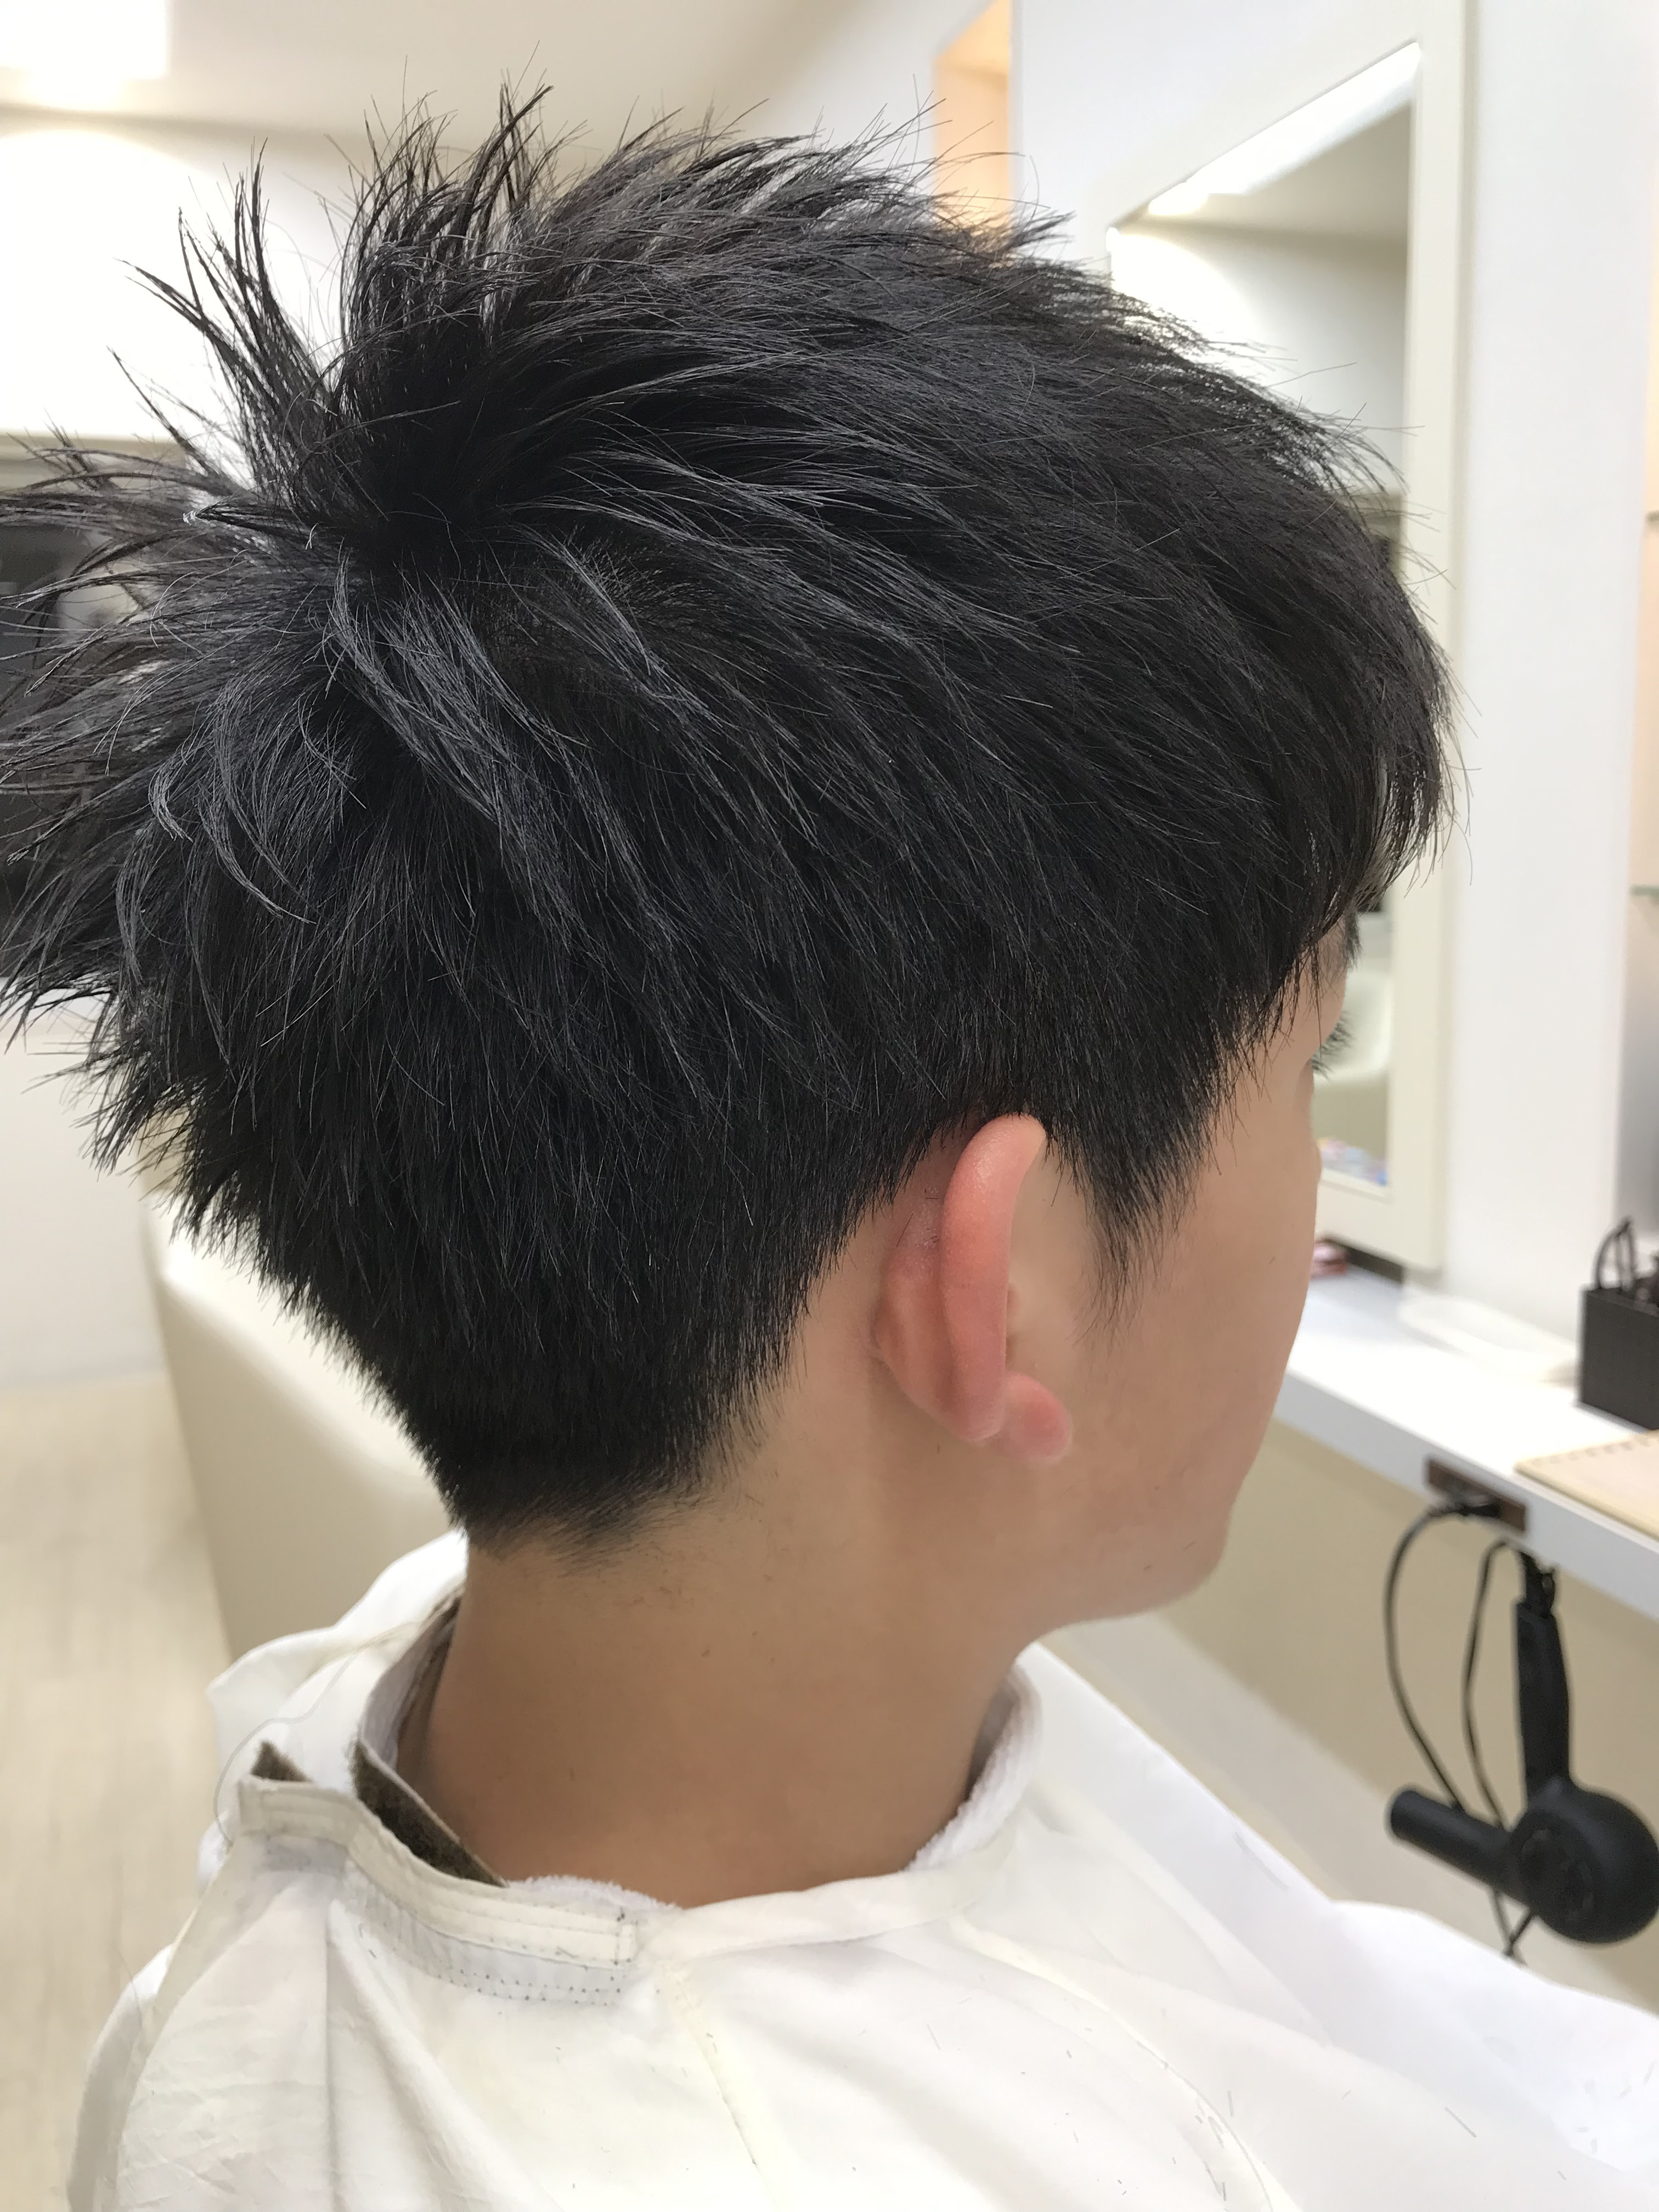 新着厳しい 中学校 中学生 男子 髪型 校則 最も人気のある髪型